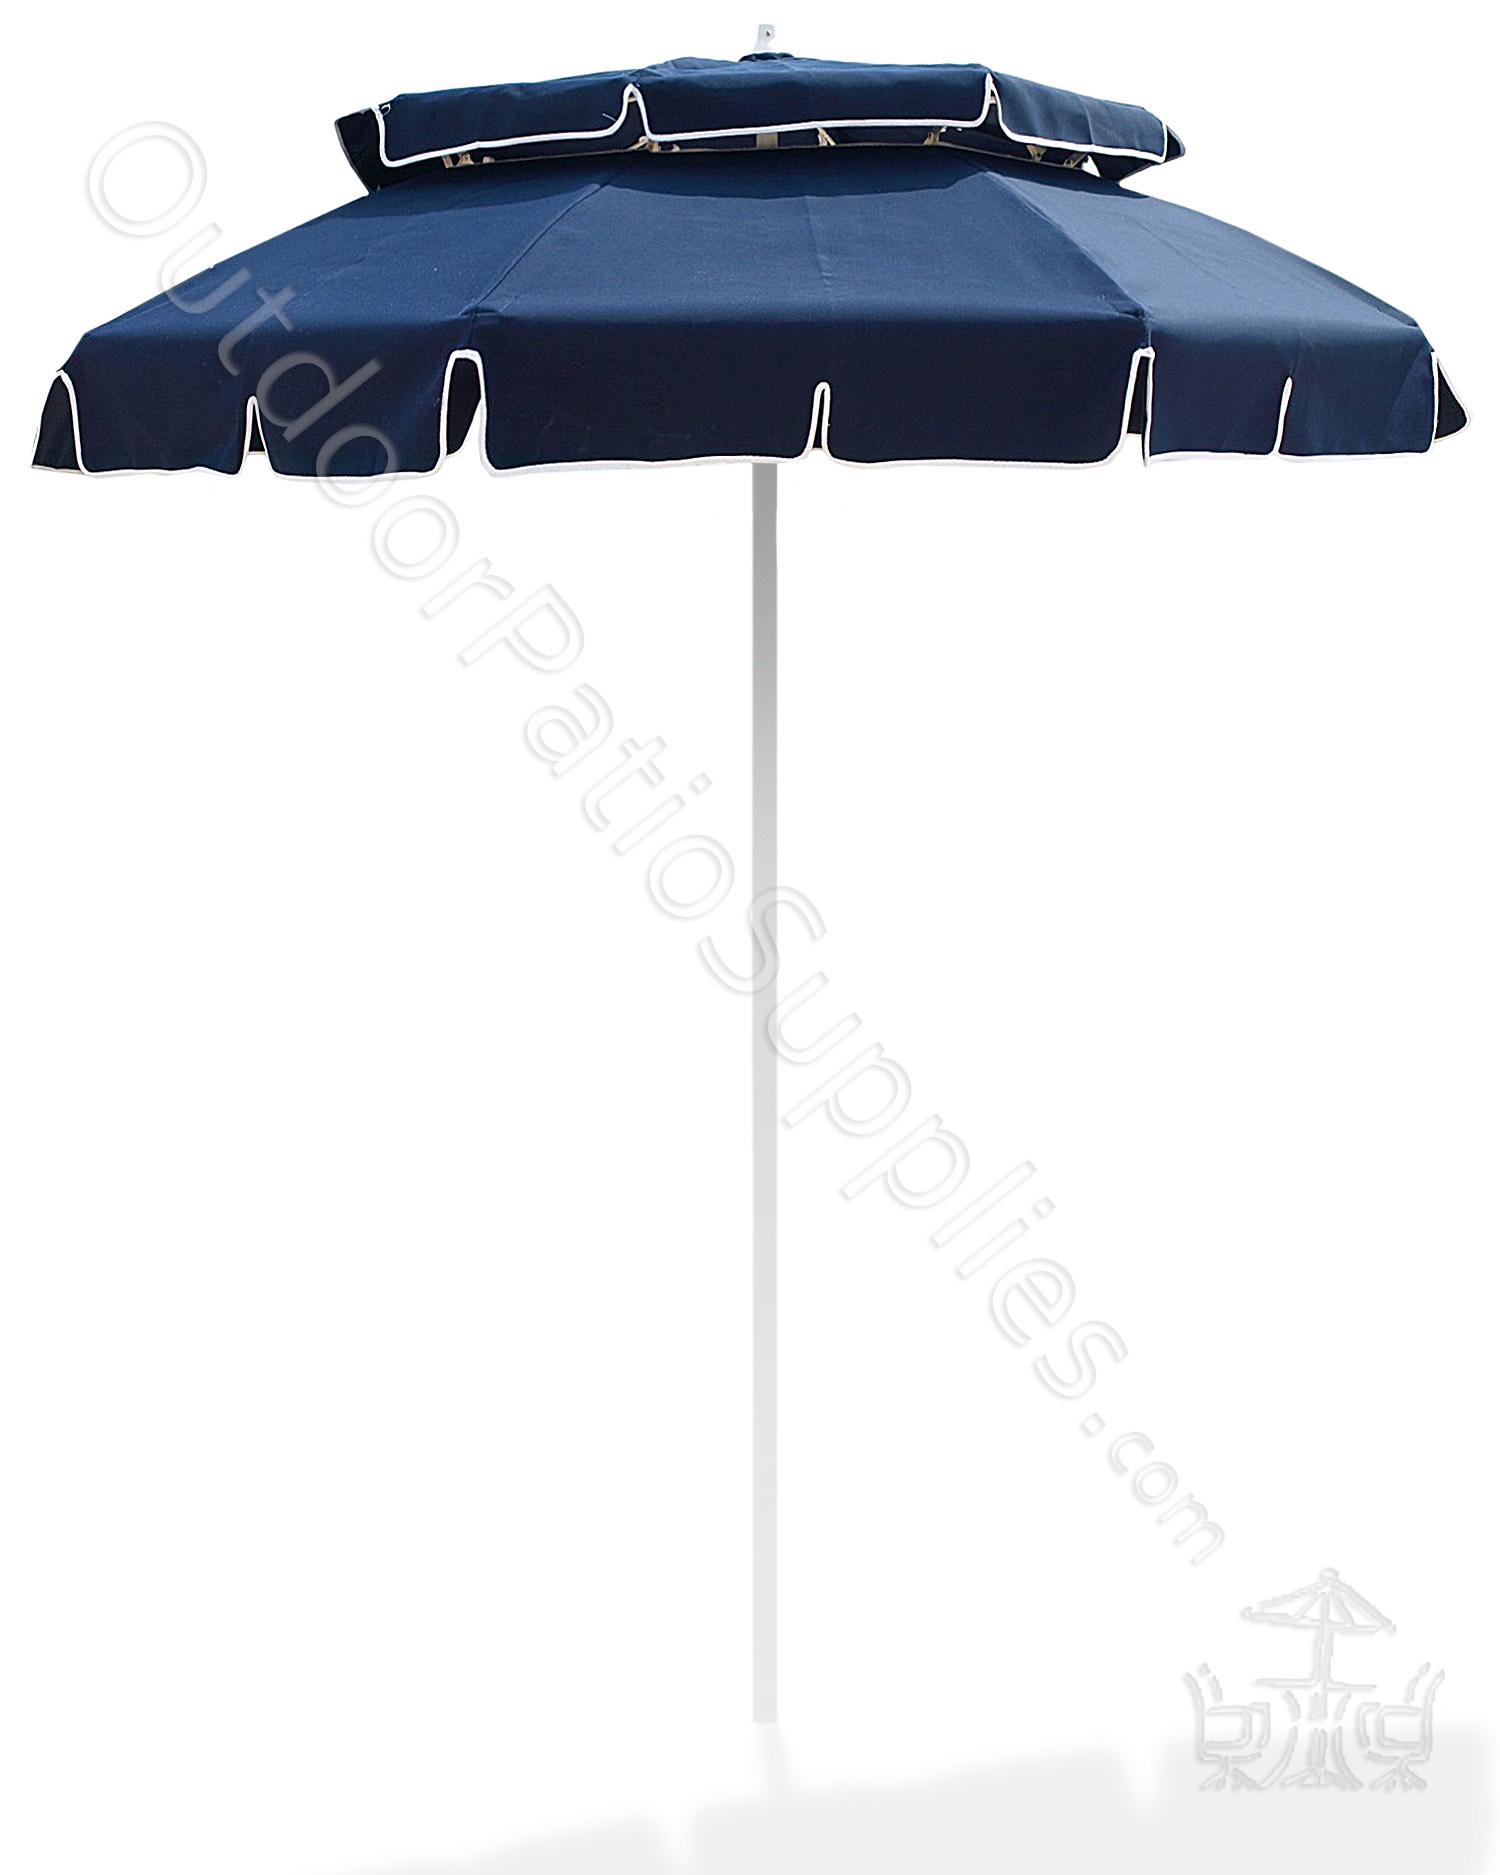 Key West umbrella